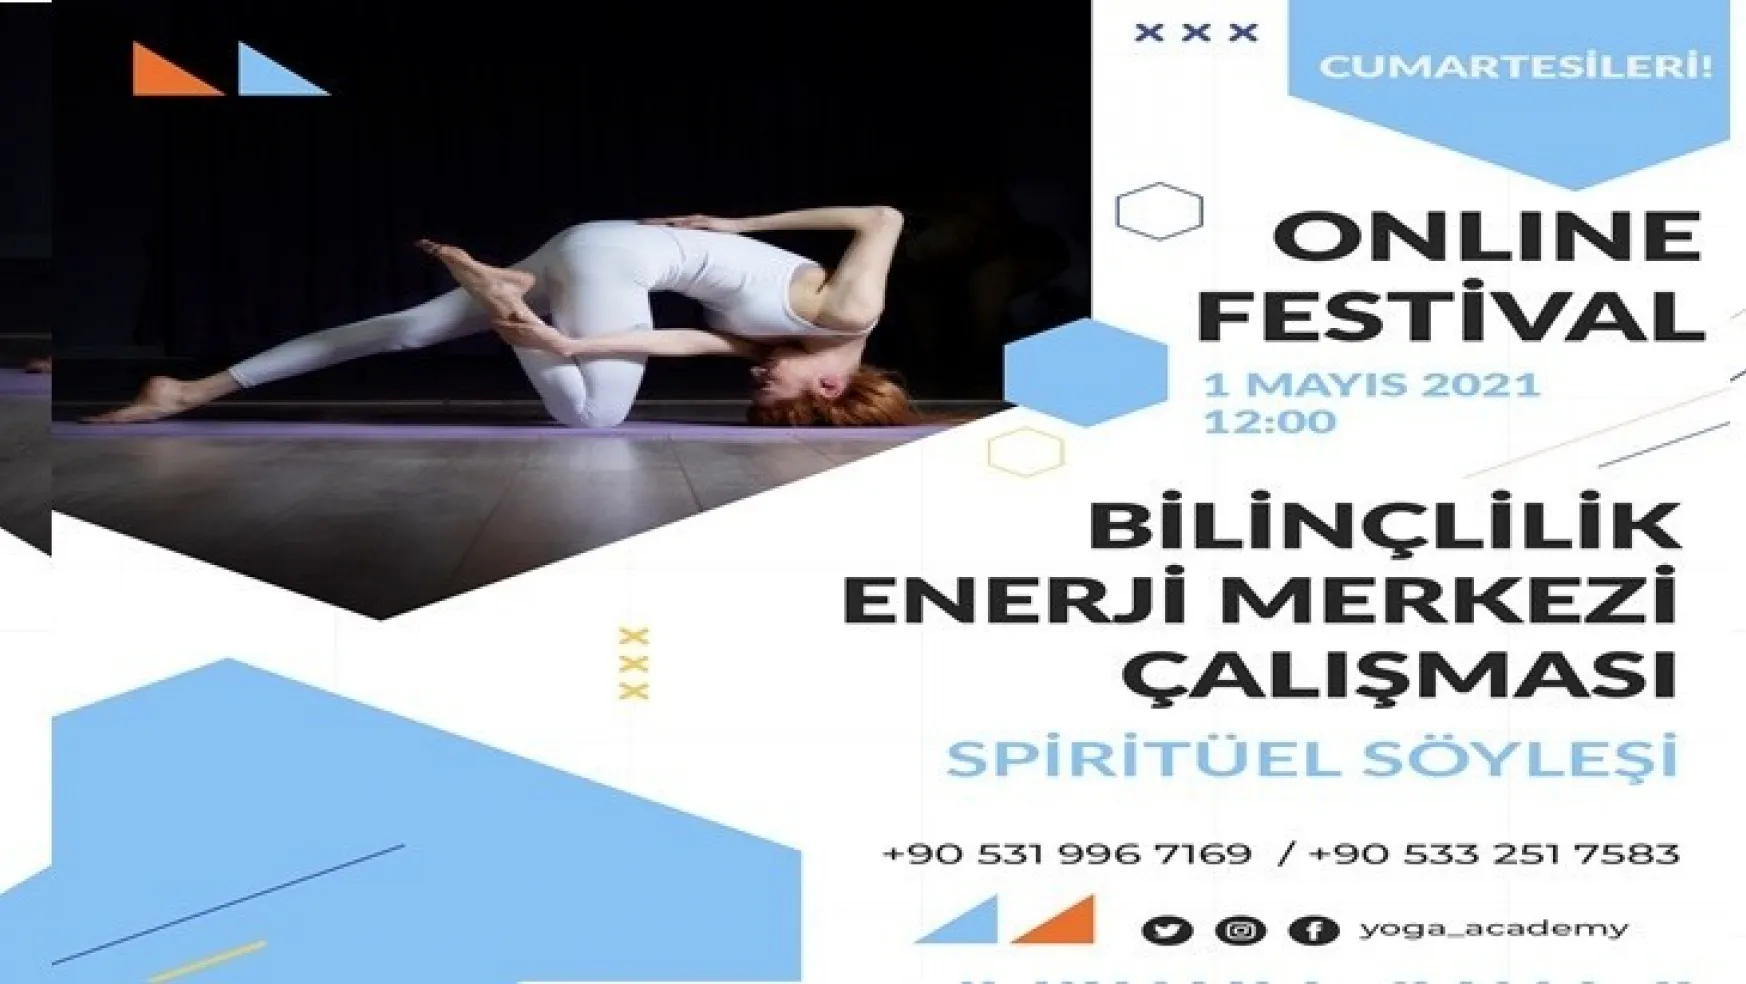 Covıd-19'a Karşı Bağışıklığı Güçlendiren Festival!